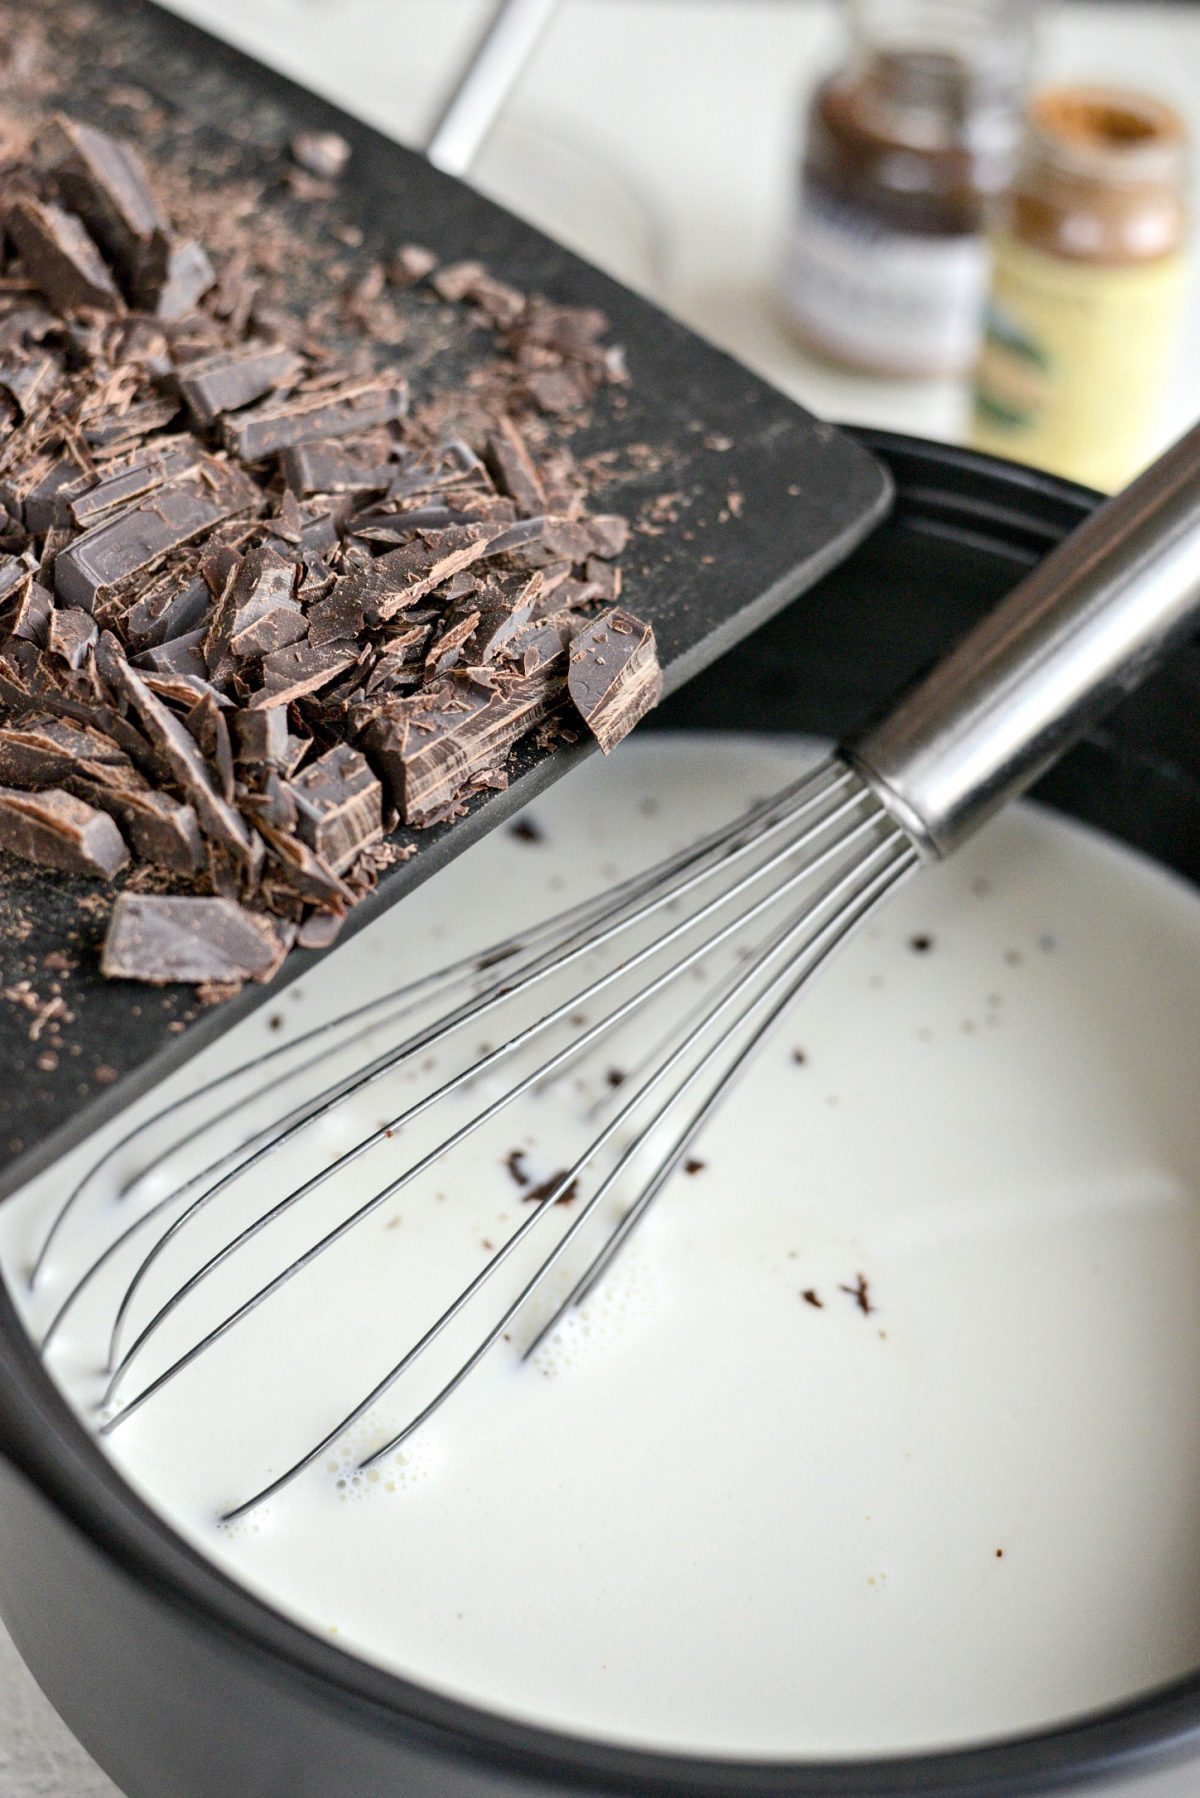 Add in chopped chocolate 